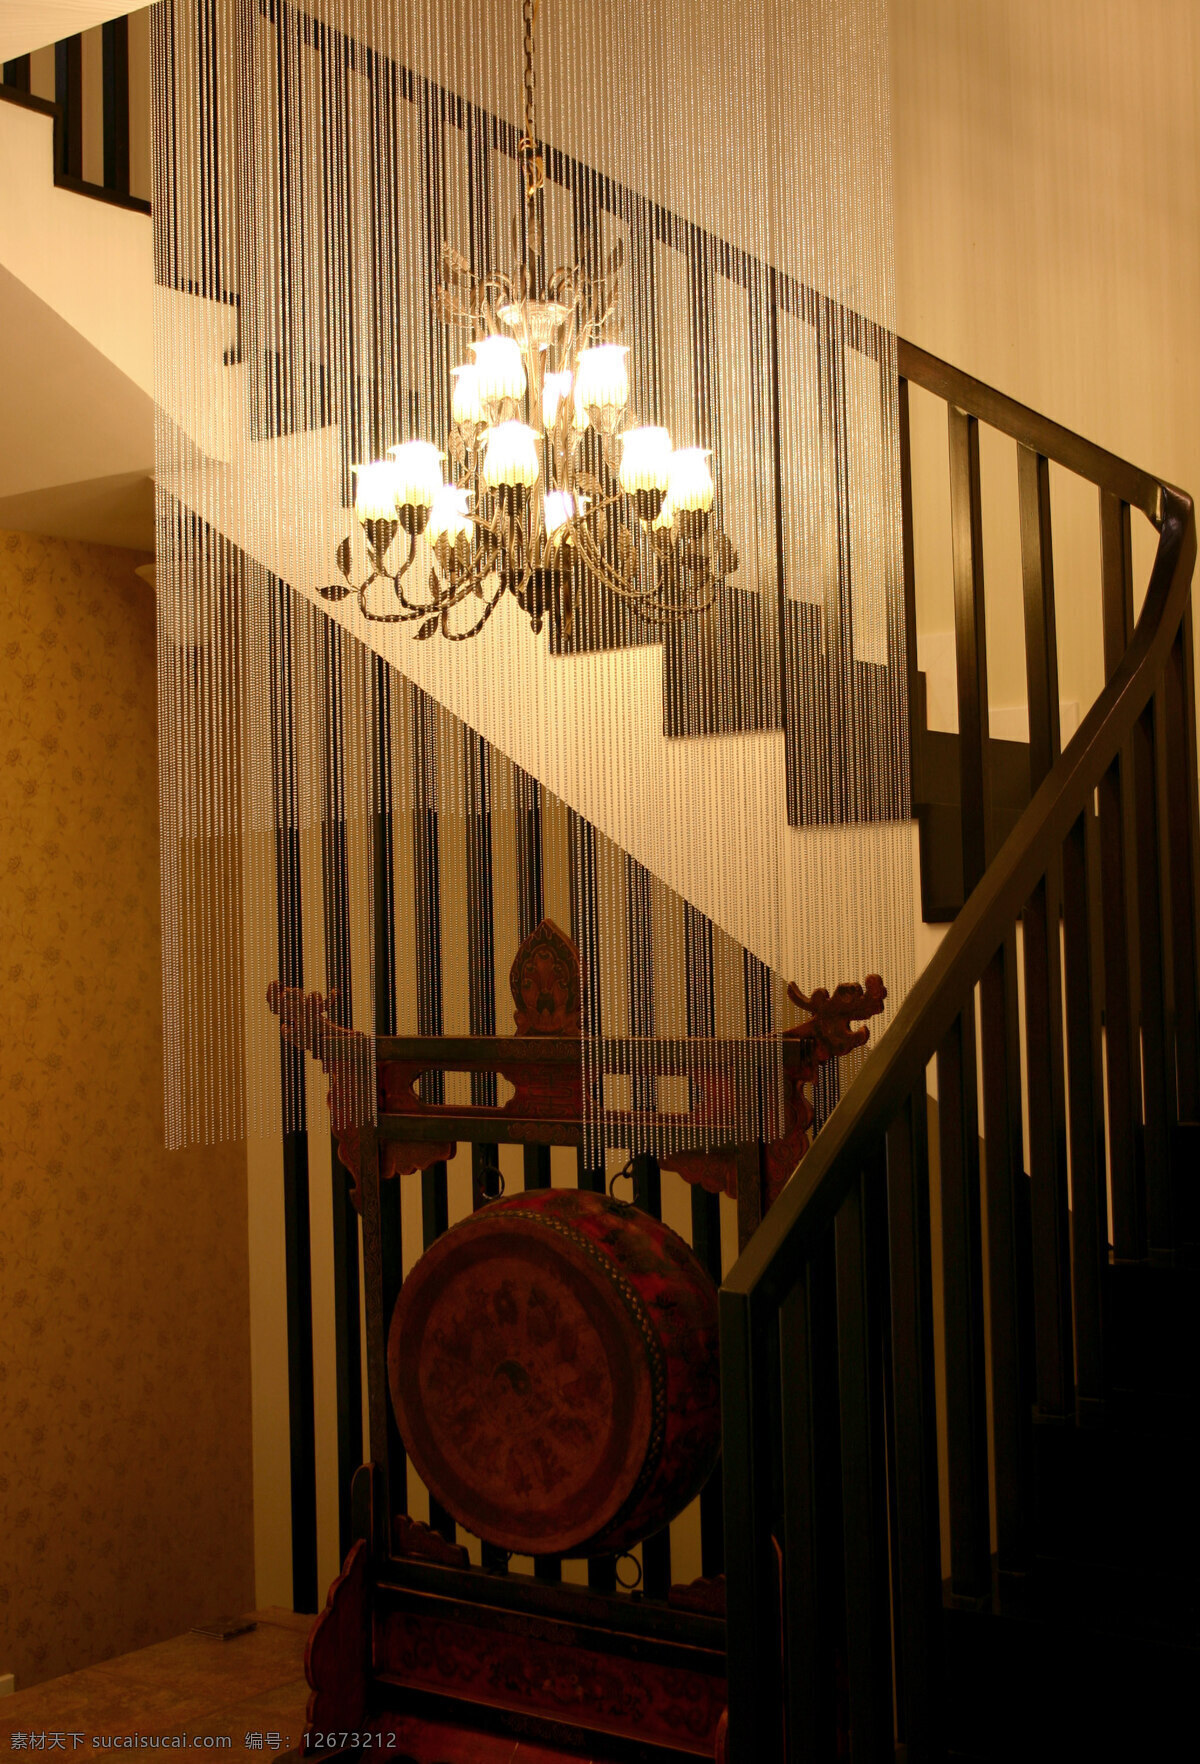 室内设计 实景 照片 资料图片 餐厅 建筑园林 楼梯 室内 室内摄影 资料 过厅 装饰素材